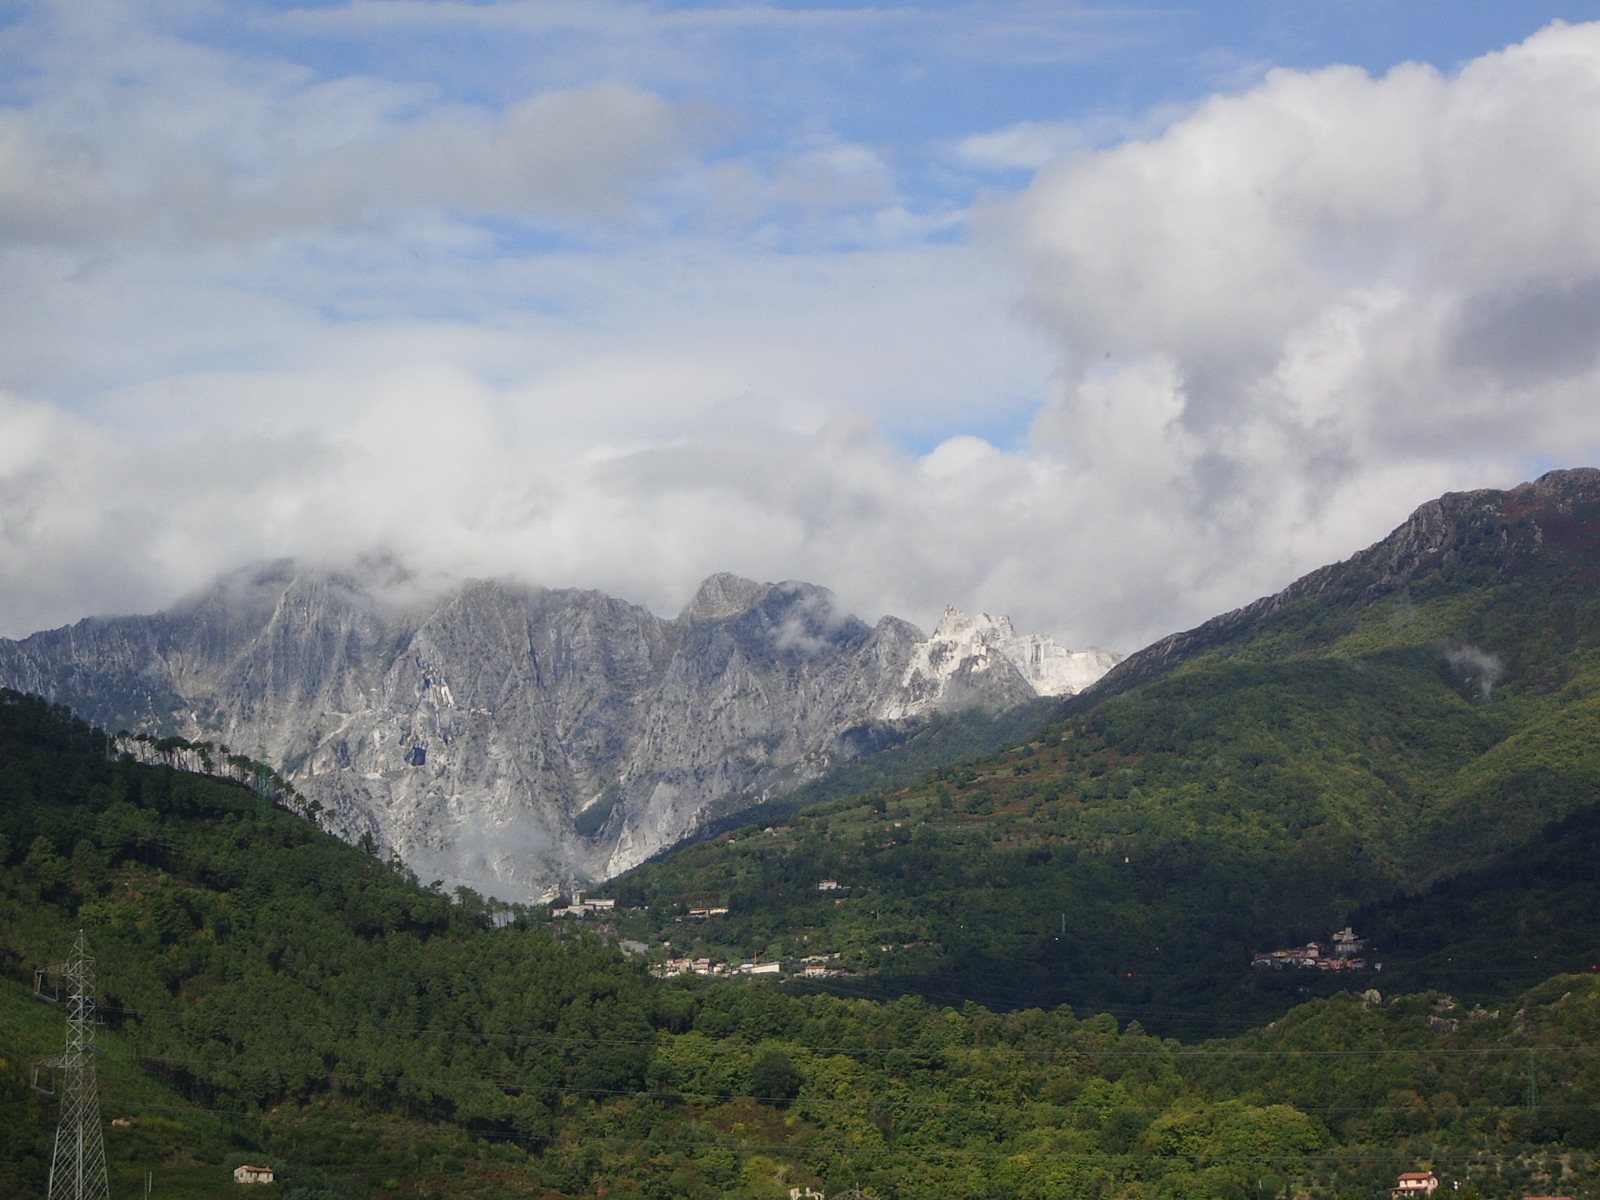 Alps - Wikipedia